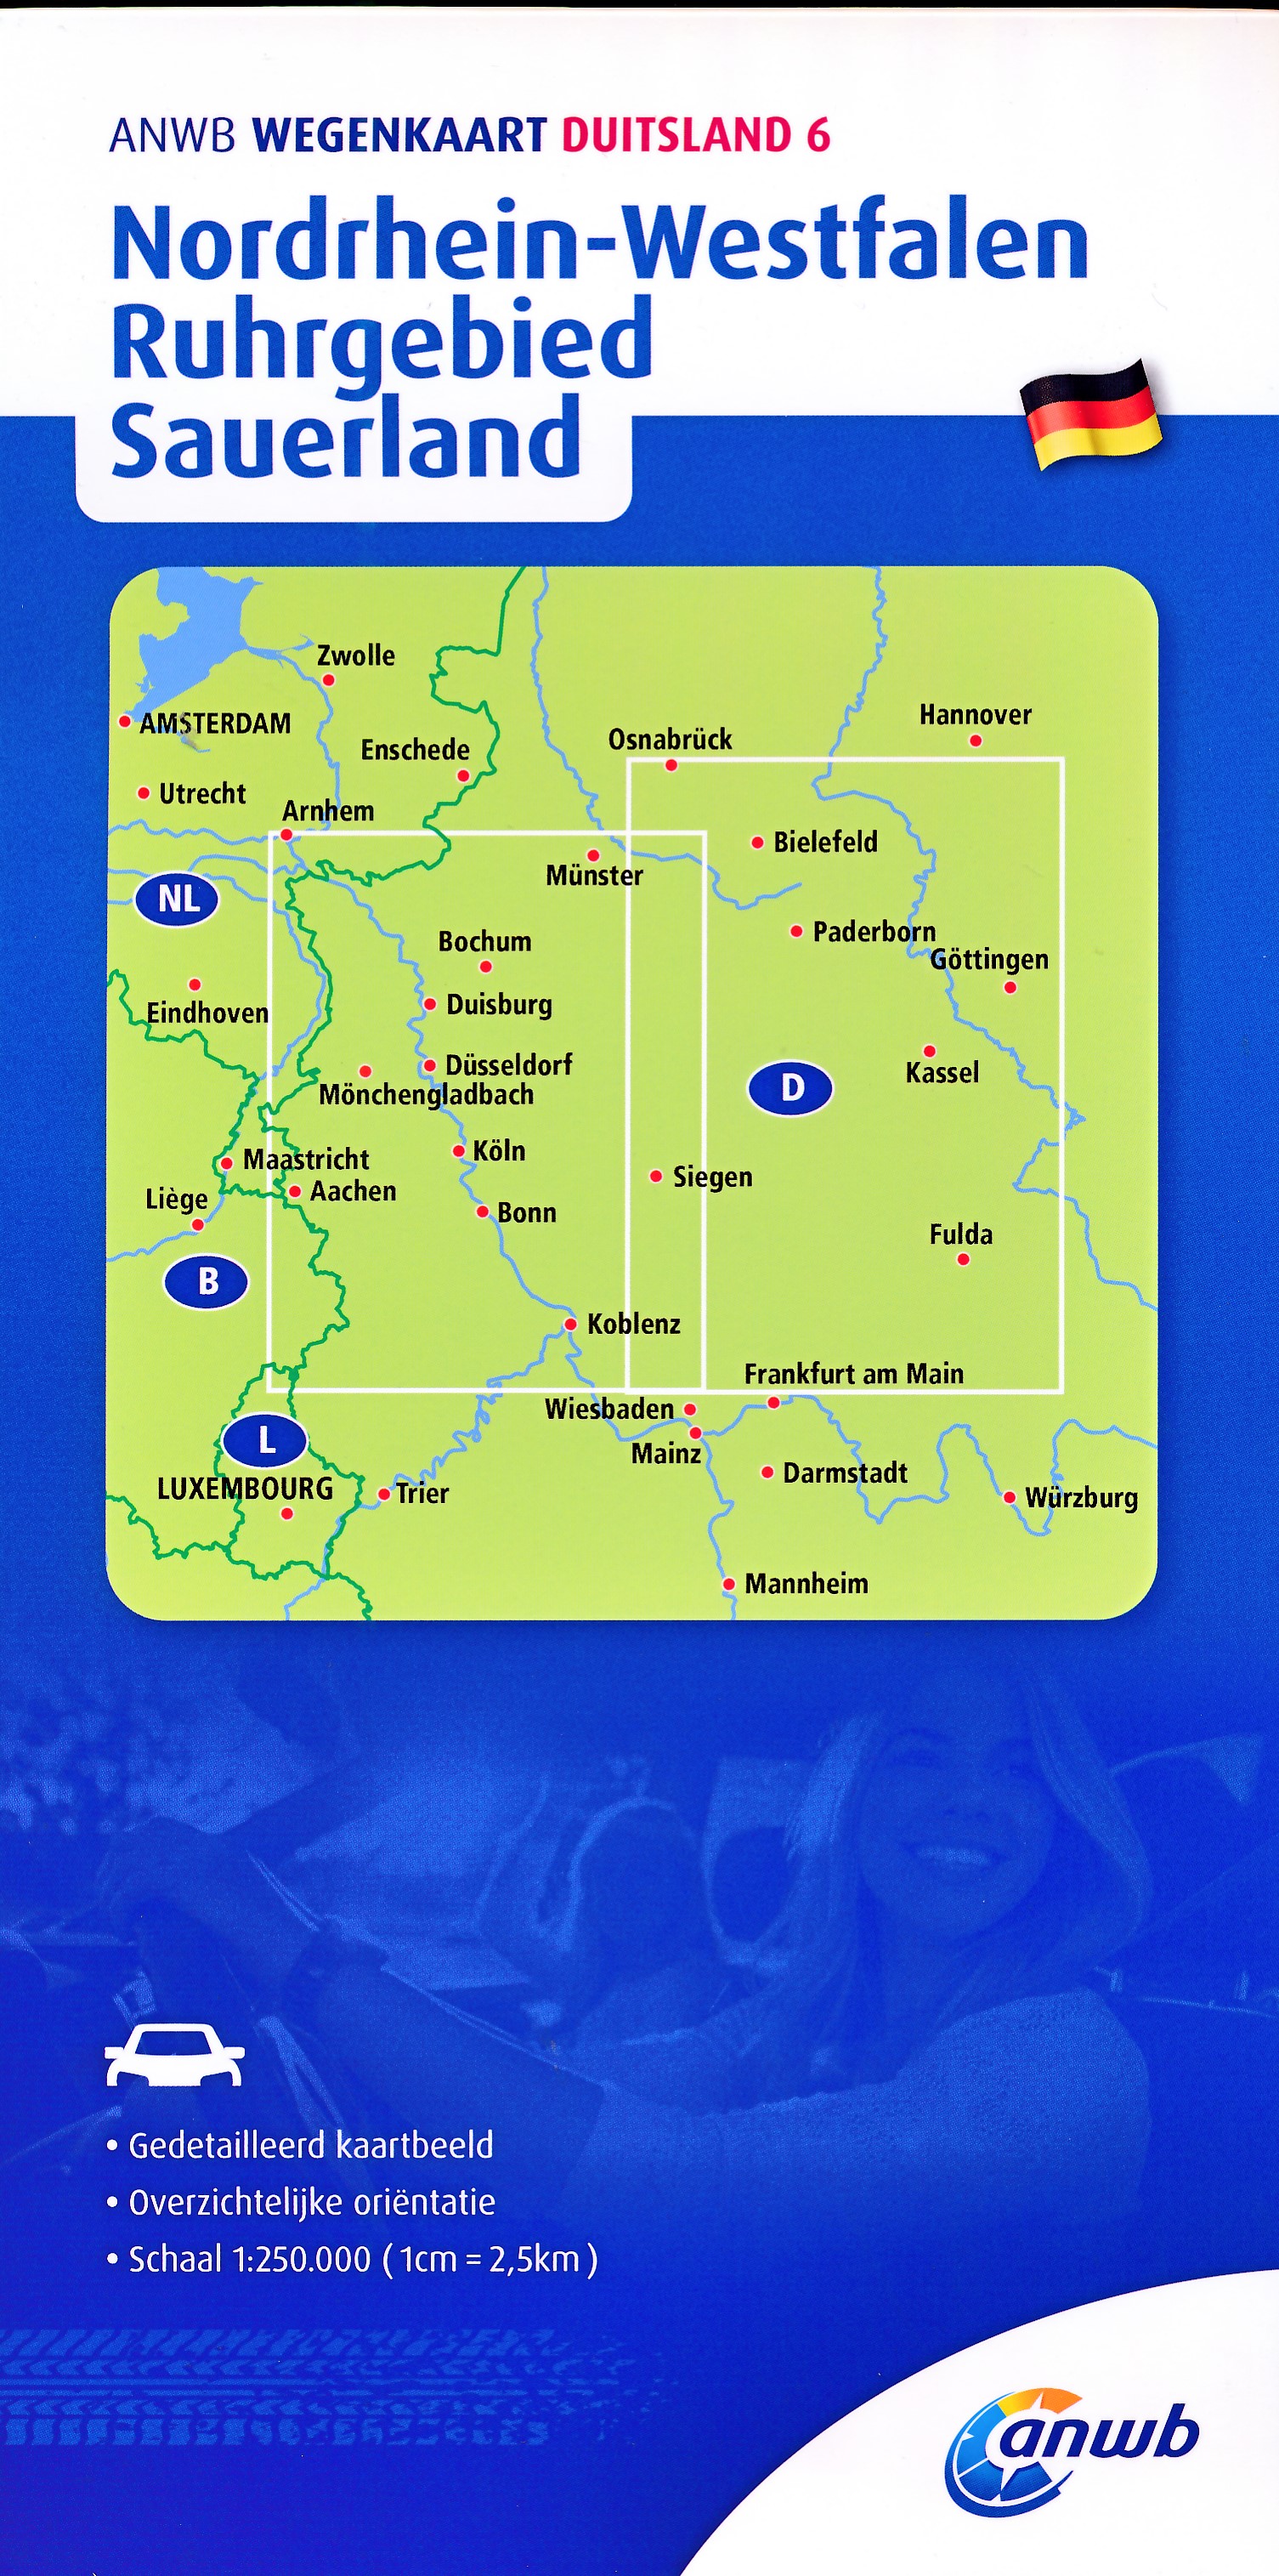 Online bestellen: Wegenkaart - landkaart 6 Nordrhein-Westfalen - Ruhrgebied - Sauerland | ANWB Media